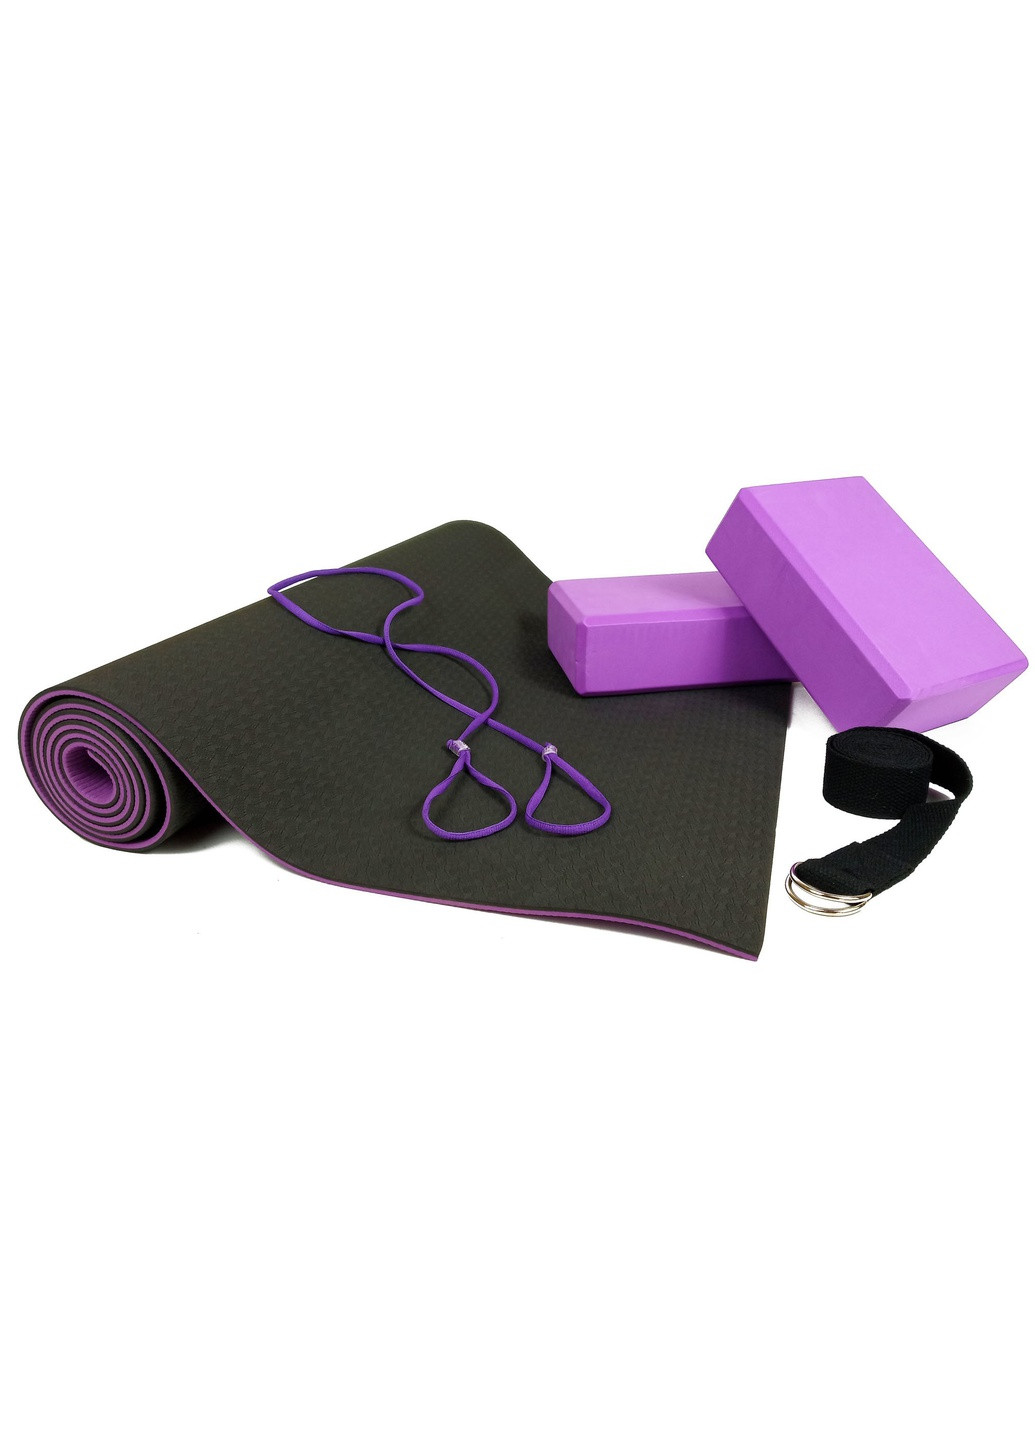 Набір для йоги PRO (EF-YPBV) - килимок для йоги (каремат, йогамат для фітнесу), два блоки (цеглини) і ремінь (лямка) EasyFit (241229805)